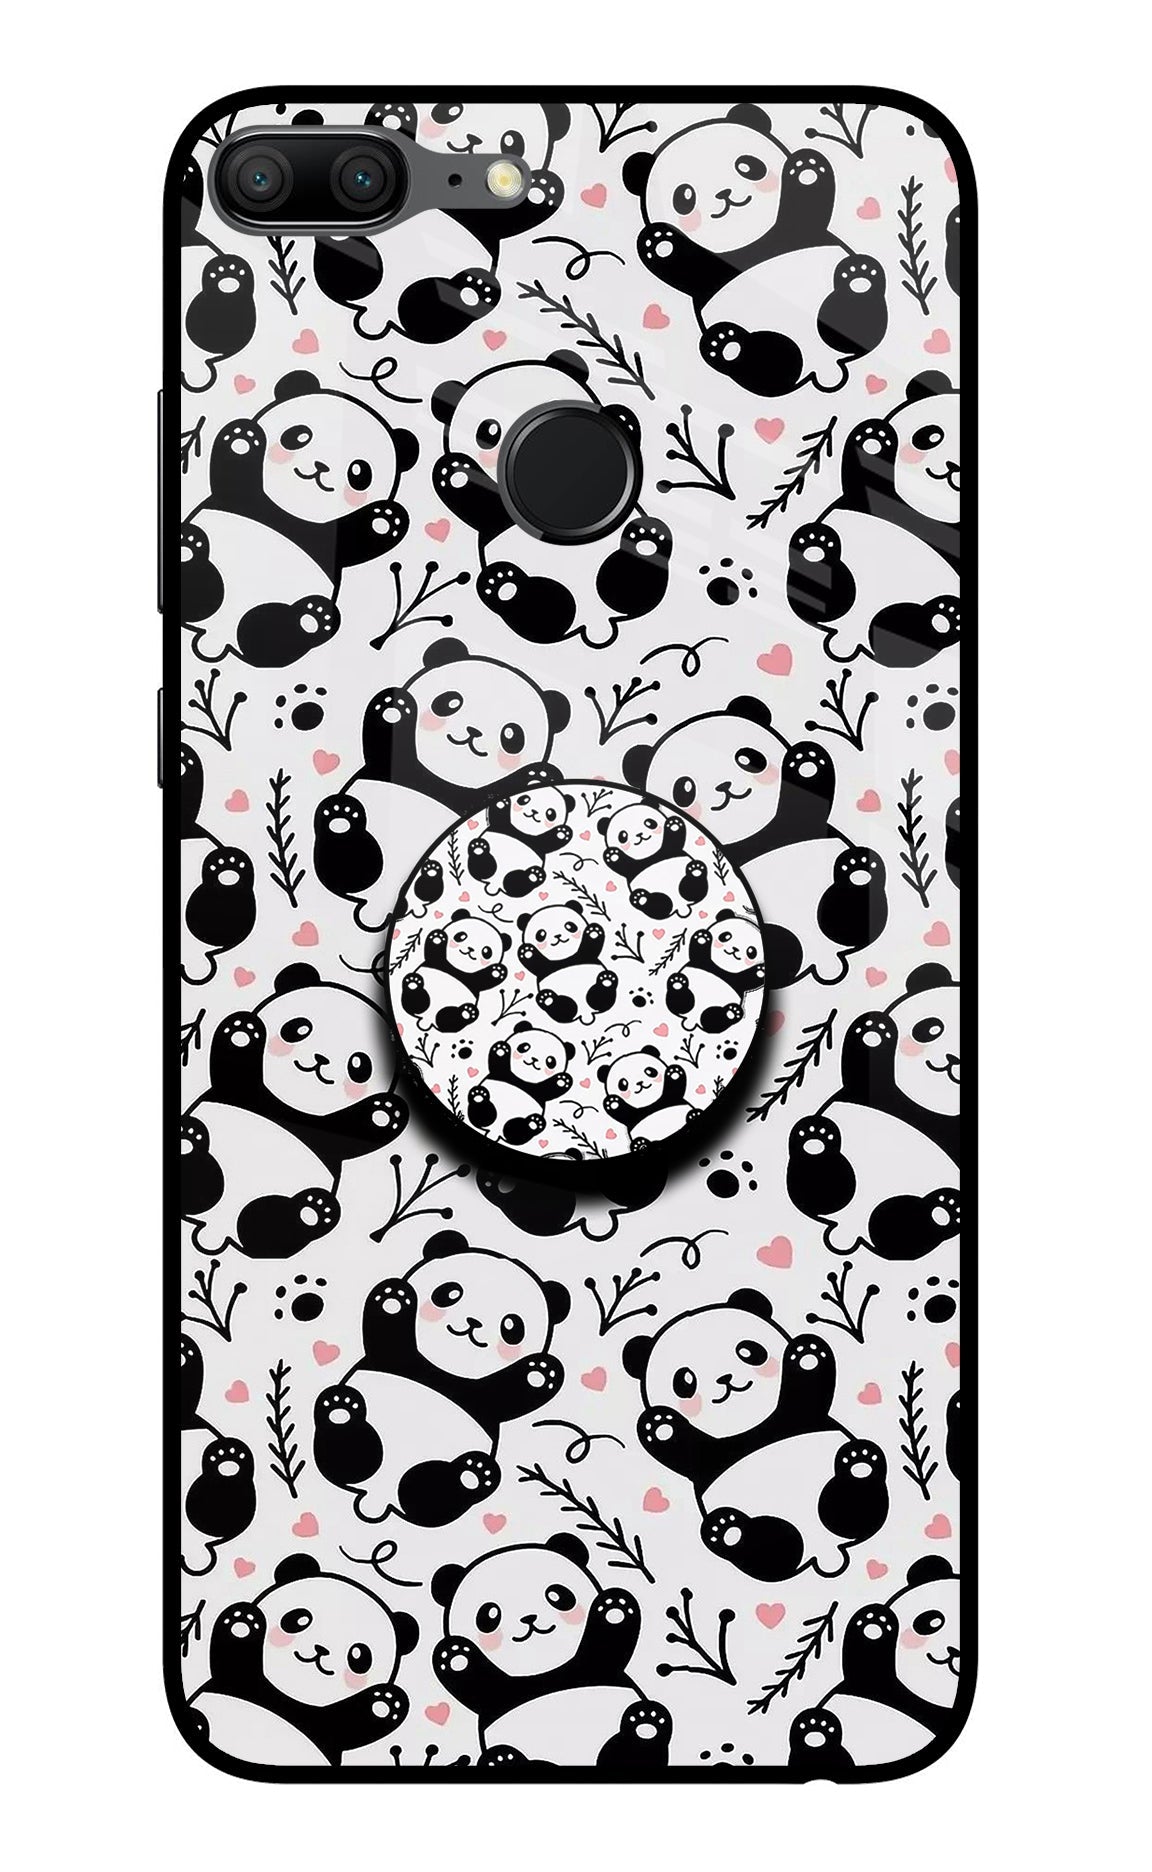 Cute Panda Honor 9 Lite Glass Case